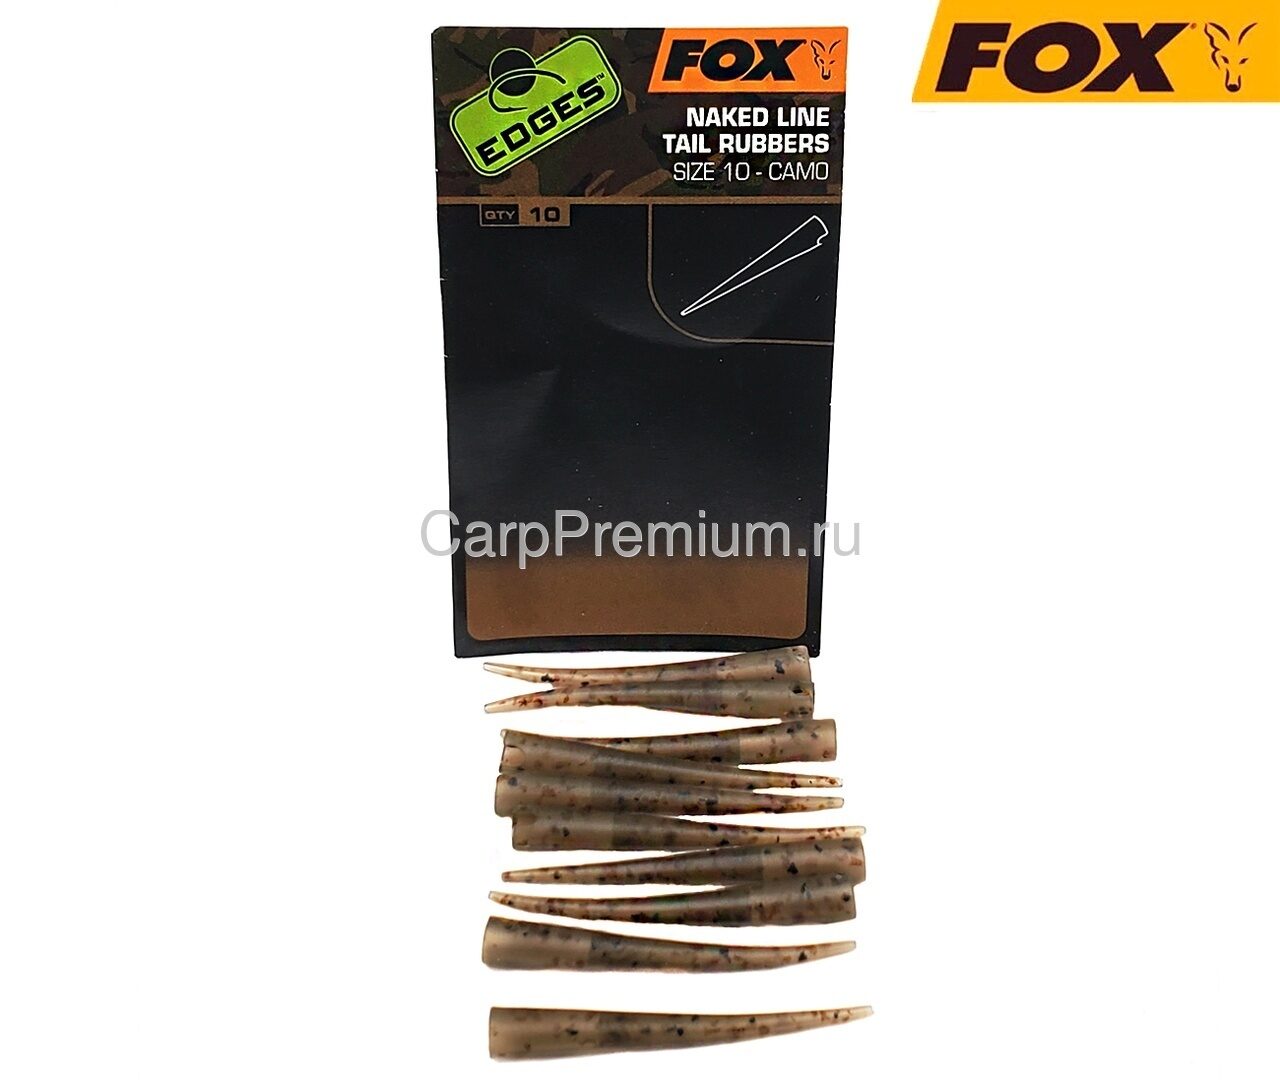 Конуса резиновые для клипсы с прорезью Камуфляжные Fox (Фокс) - Edges Camo Naked Line Tail Rubbers, Размер 10, 10 шт